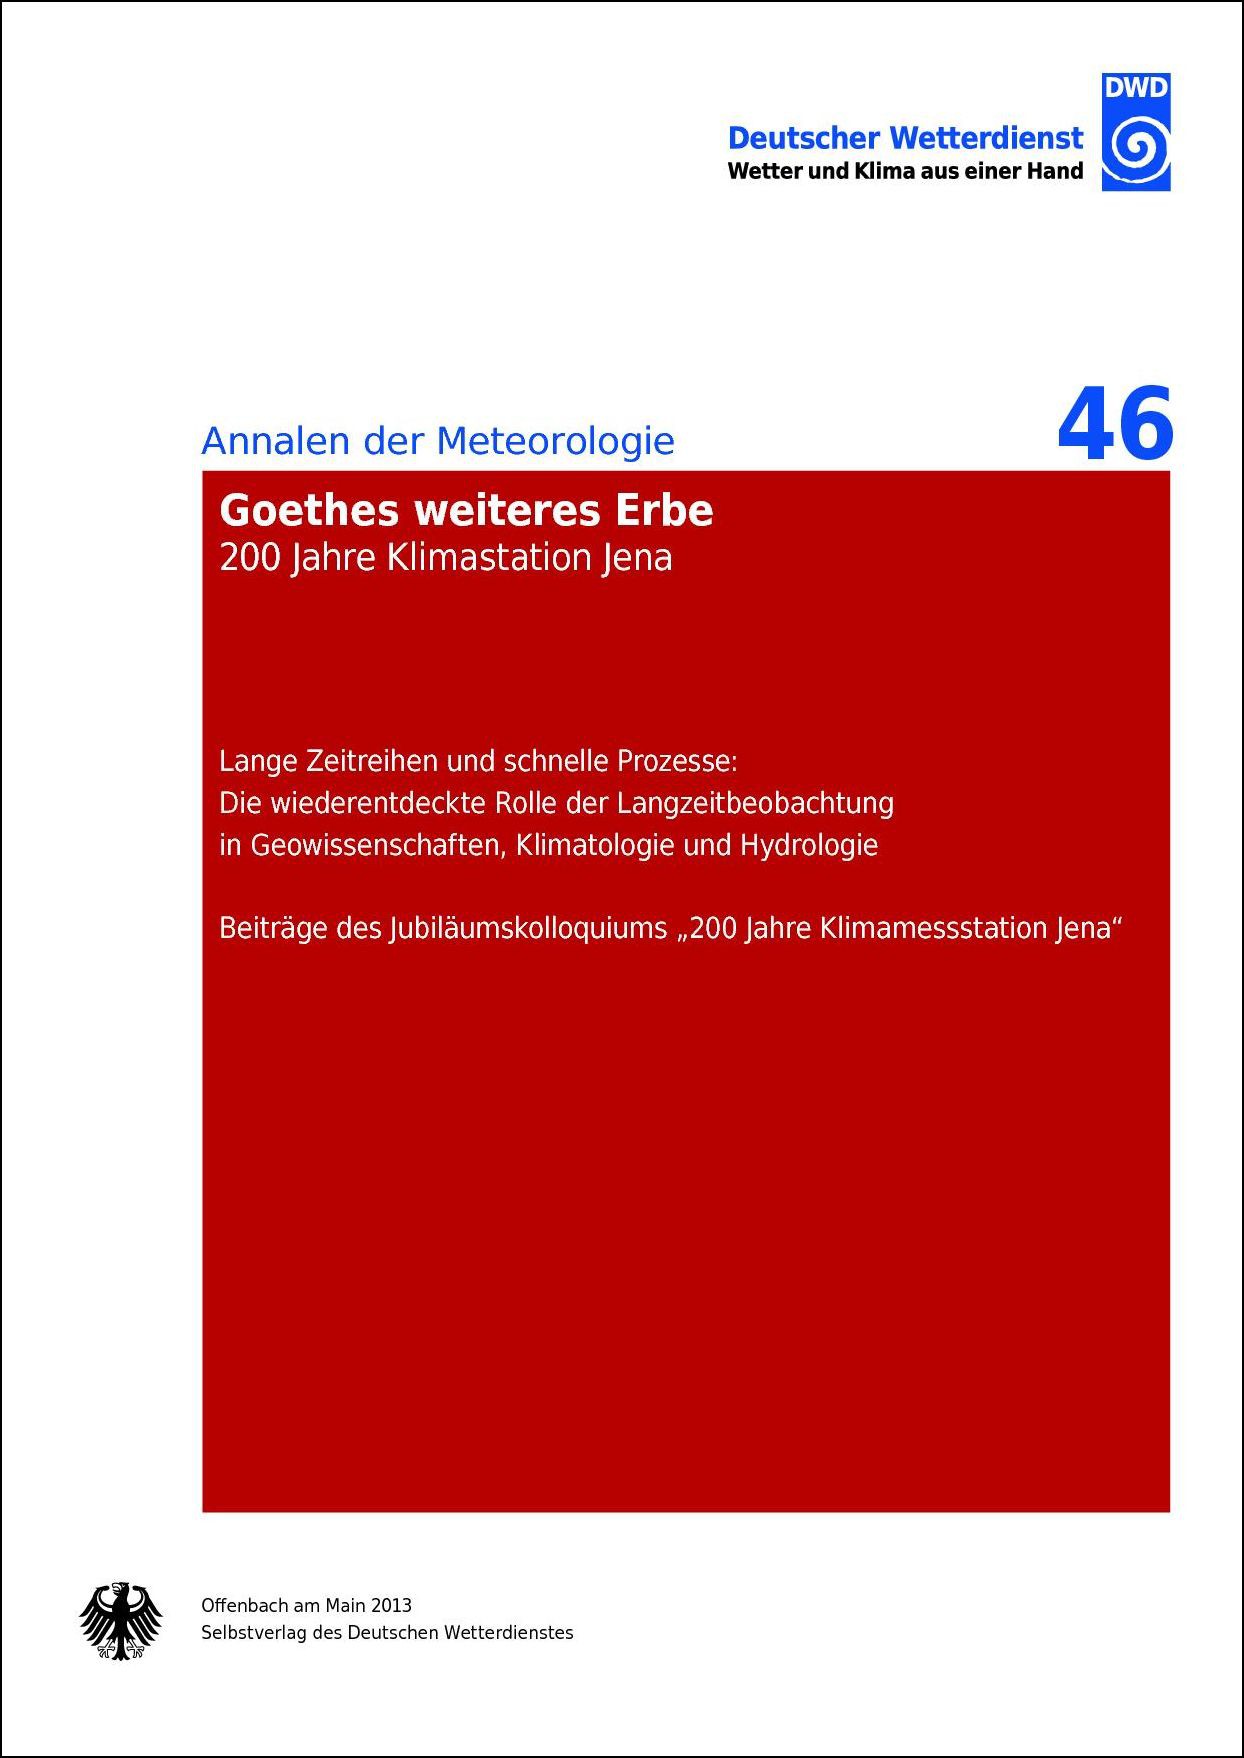 Titelseite der Publikation Goethes weiteres Erbe (Annalen der Meteorologie Nr. 46)